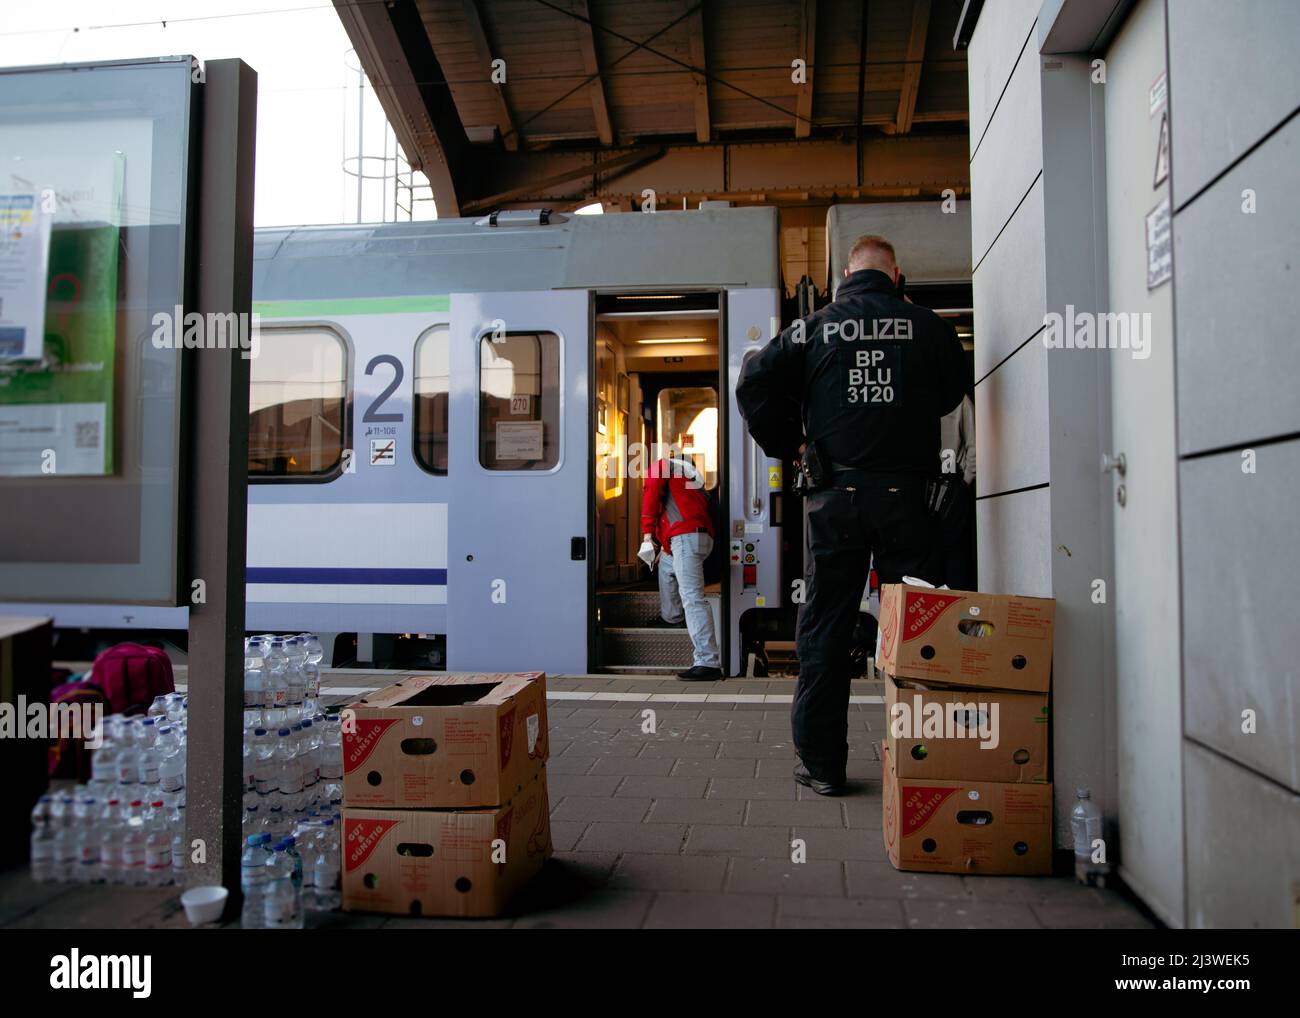 Frontera germano-polaca: Control fronterizo en trenes de refugiados con el pueblo ucraniano, que huyen de la guerra. Estación de tren Frankfurt Oder. Foto de stock